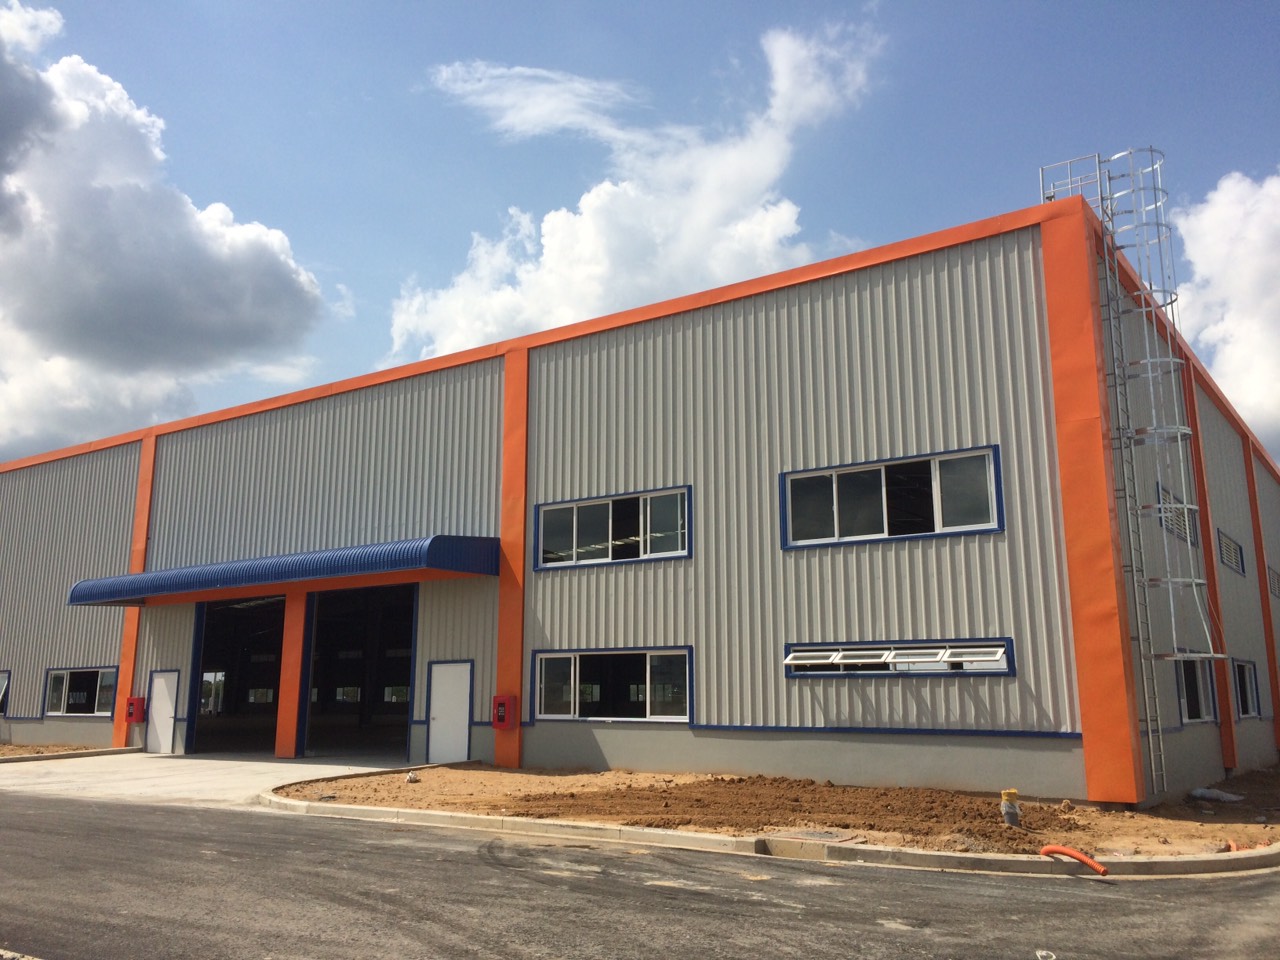  Nhà xưởng X1 thuộc chuỗi 8 block nhà xưởng cho thuê của NGJSC đã sẵn sàng cho thuê ngay với giá từ 90.000 VNĐ/tháng/m2